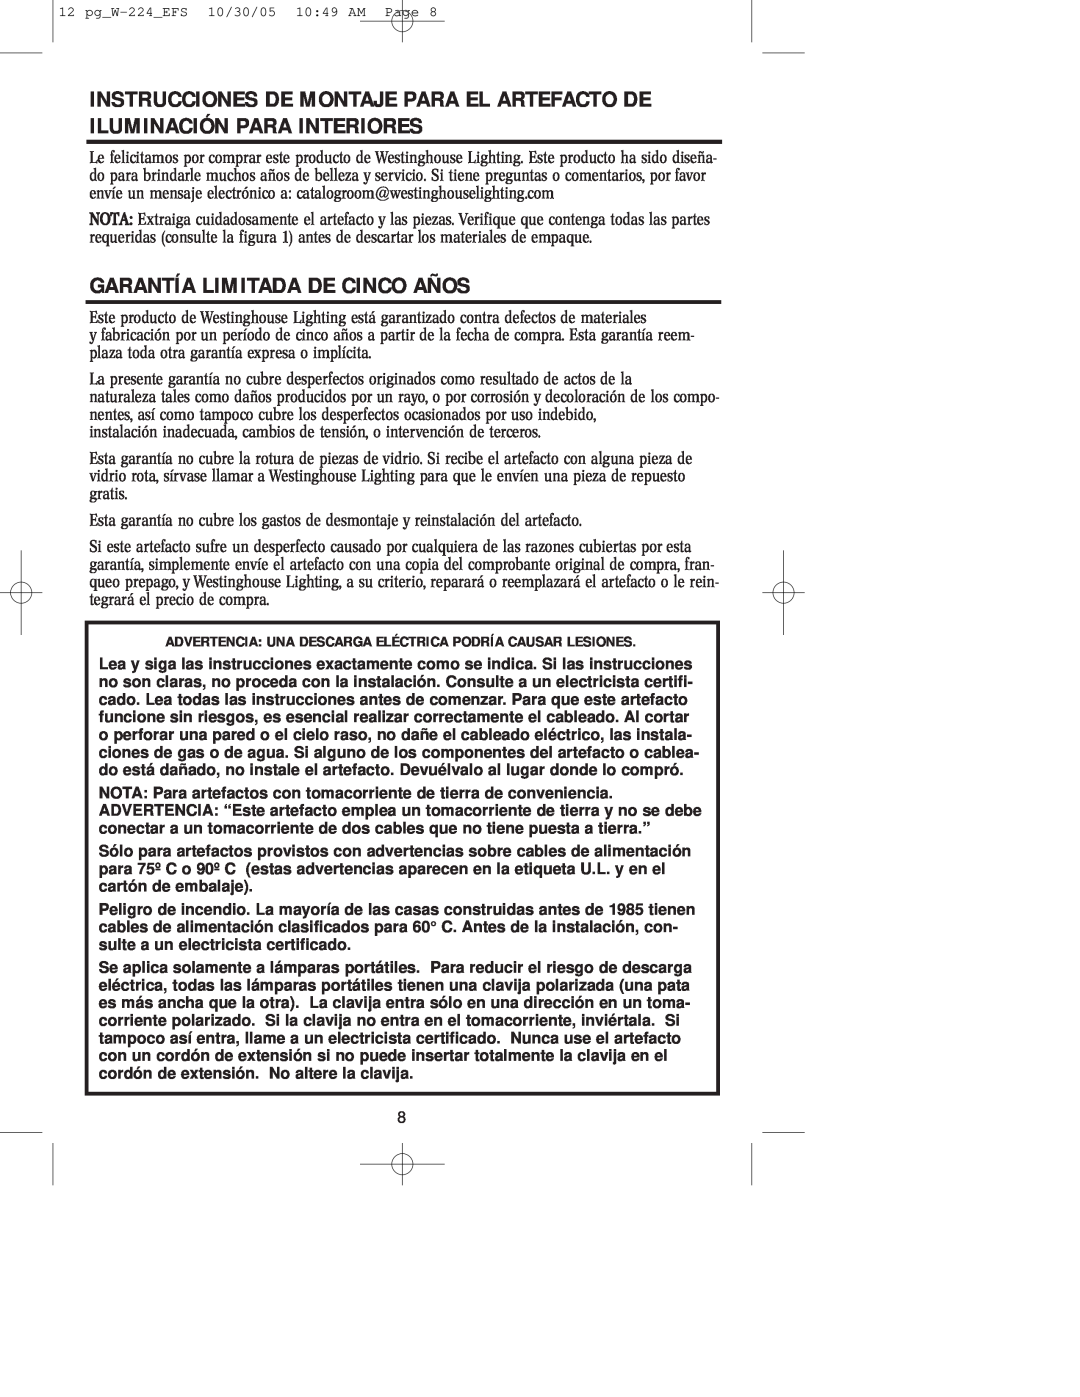 Westinghouse W-224 owner manual Garantía Limitada De Cinco Años 